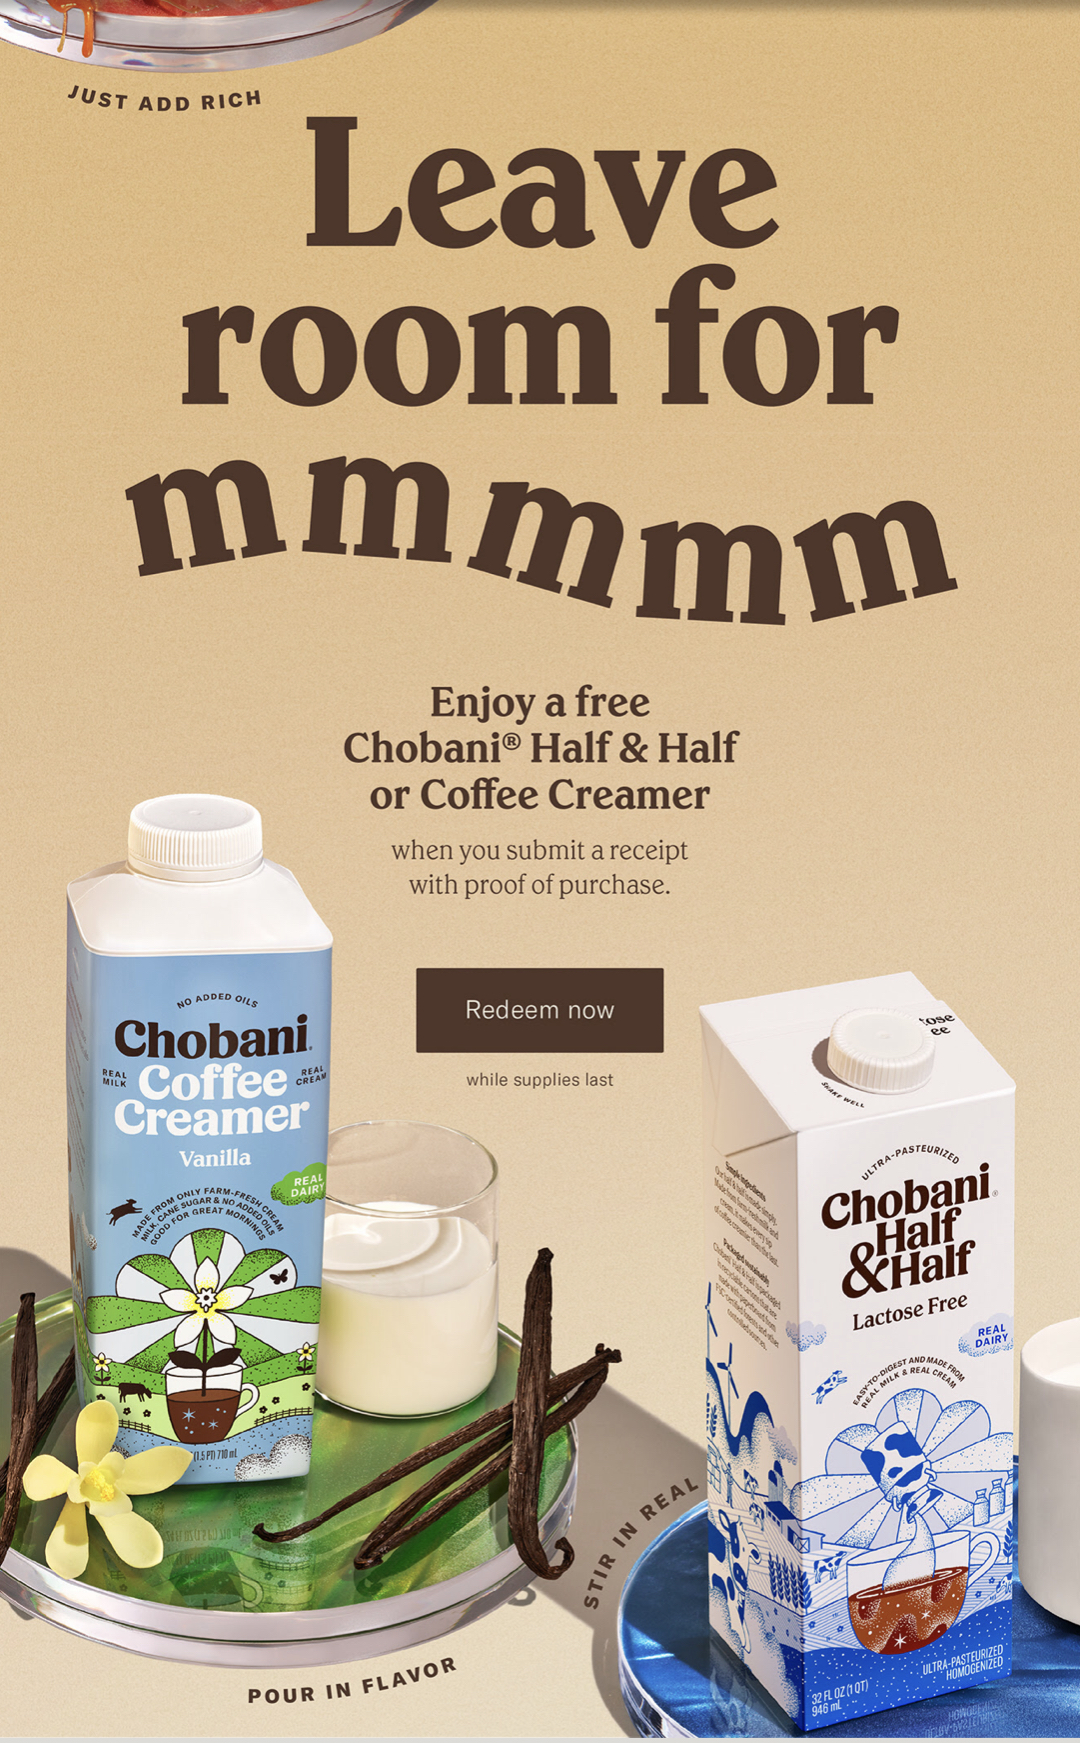 free-chobani-coffee-creamer-after-rebate-through-4-30